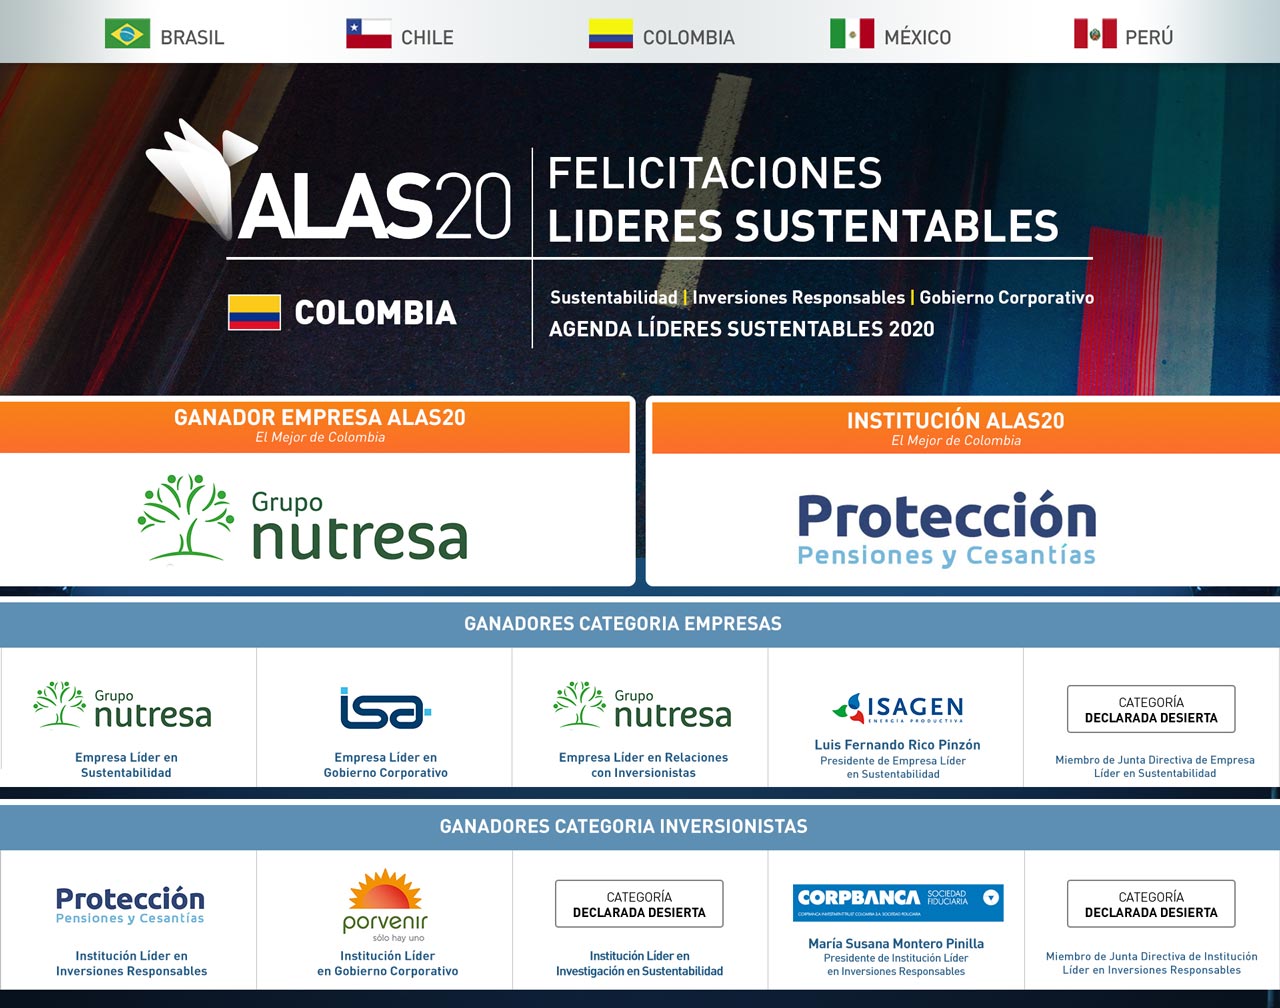 Conoce los ganadores ALAS20 Colombia año 2016